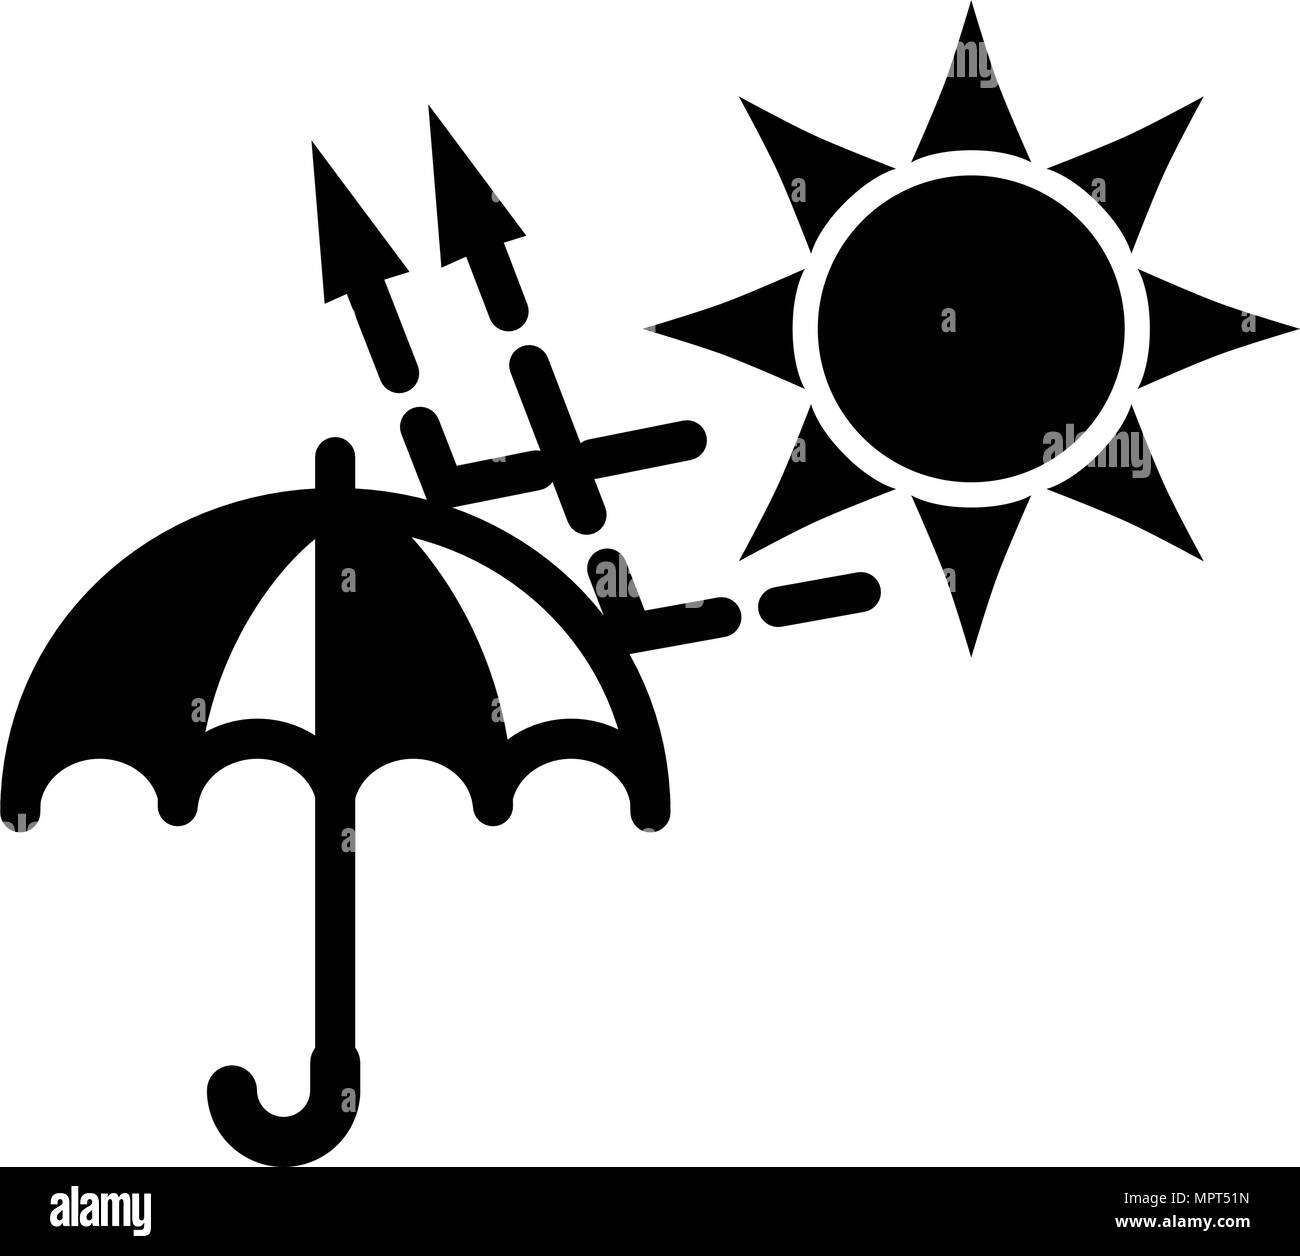 Einfache schwarze und weiße Sonne (UVA, UVB) Schutz Symbol. Sonnenstrahlen mit Pfeilen springt vom Dach. Stock Vektor